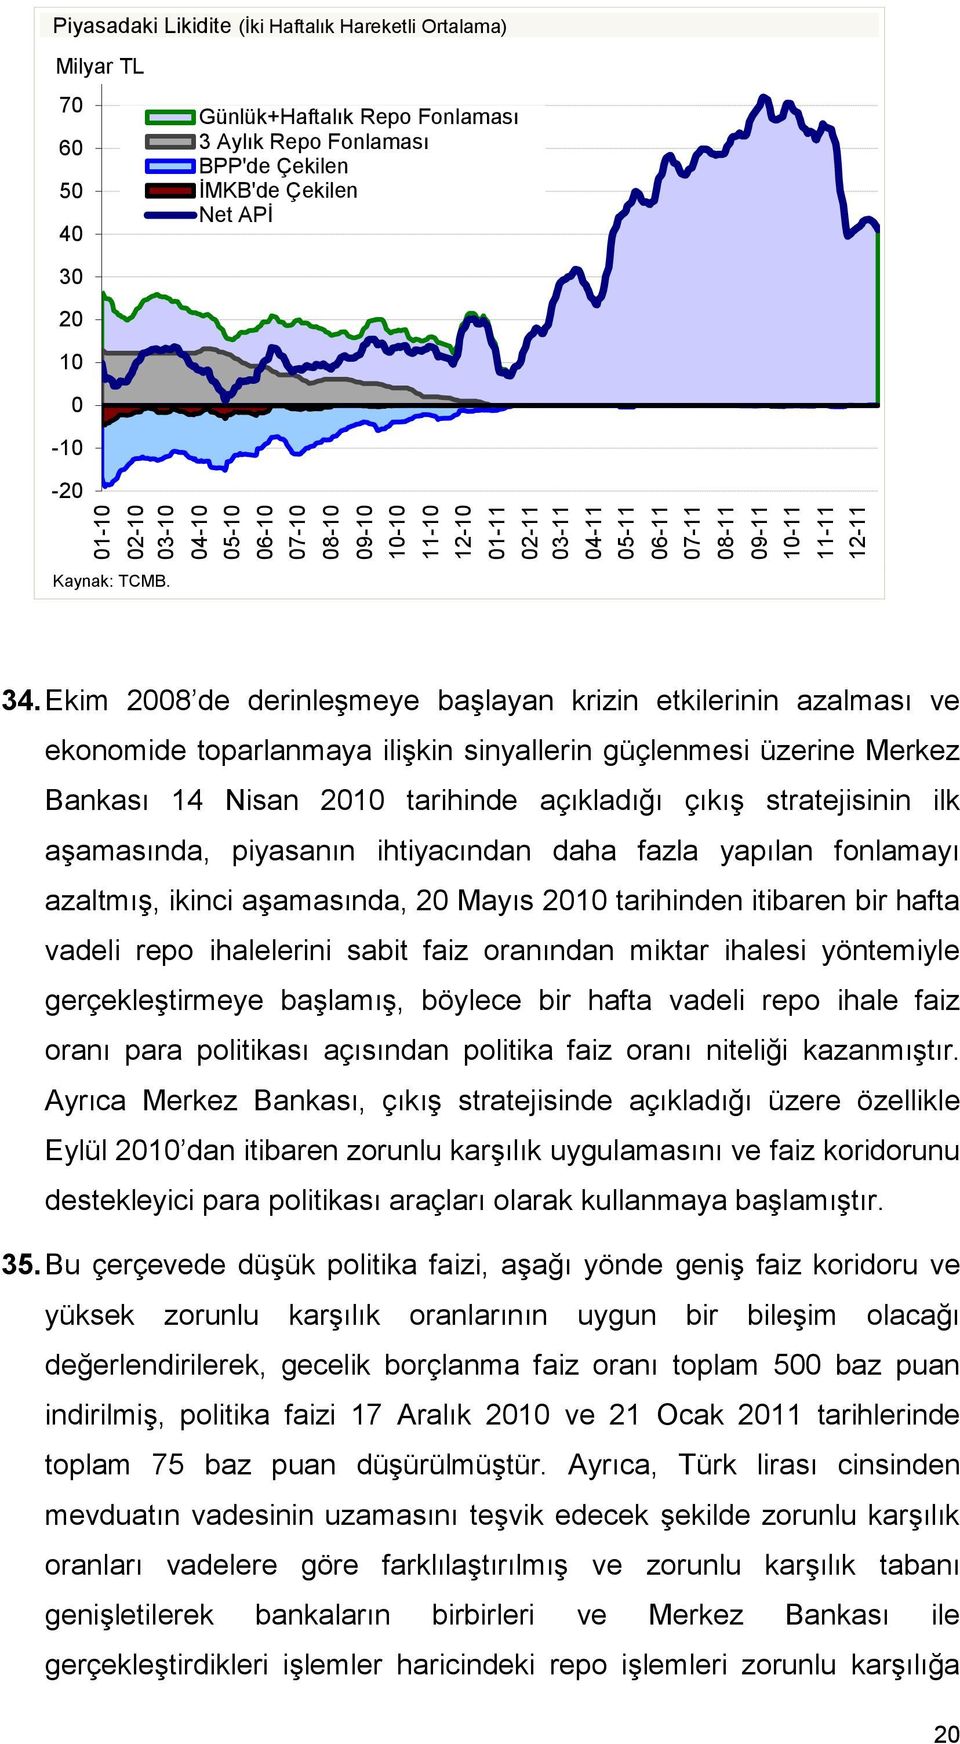 Ekim 2008 de derinleşmeye başlayan krizin etkilerinin azalması ve ekonomide toparlanmaya ilişkin sinyallerin güçlenmesi üzerine Merkez Bankası 14 Nisan 2010 tarihinde açıkladığı çıkış stratejisinin